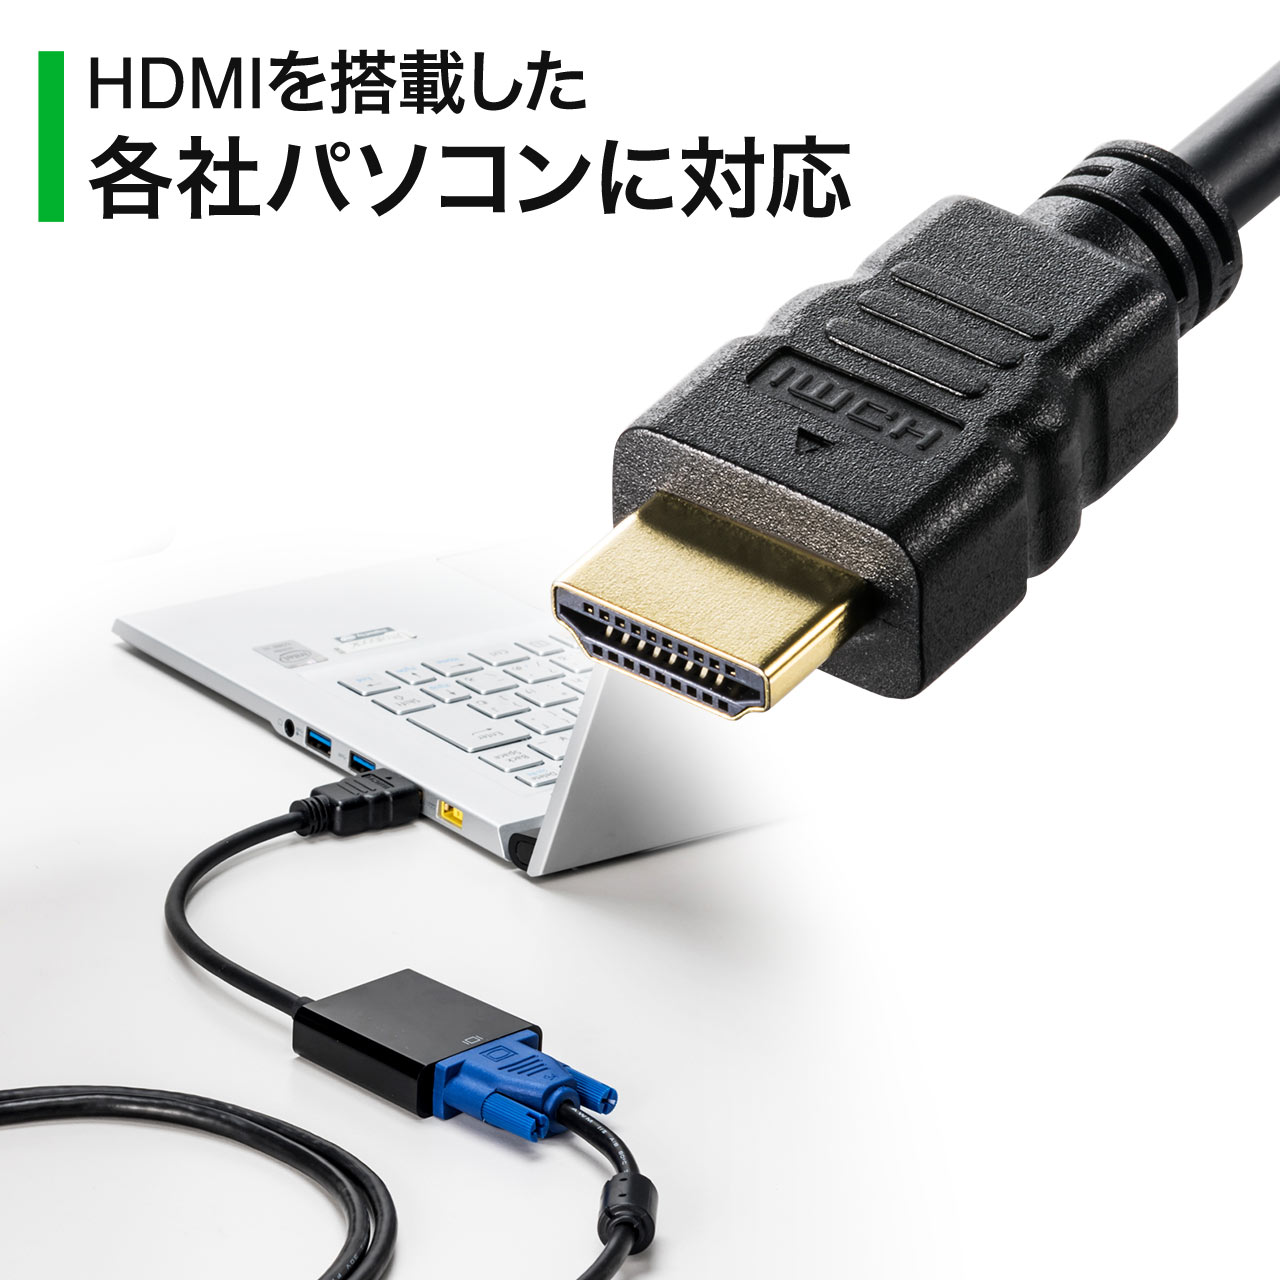 HDMI-VGAϊA_v^[iHDMIIX/VGAXϊEʊgEEtHDo͉\Edsvj 500-KC022HV